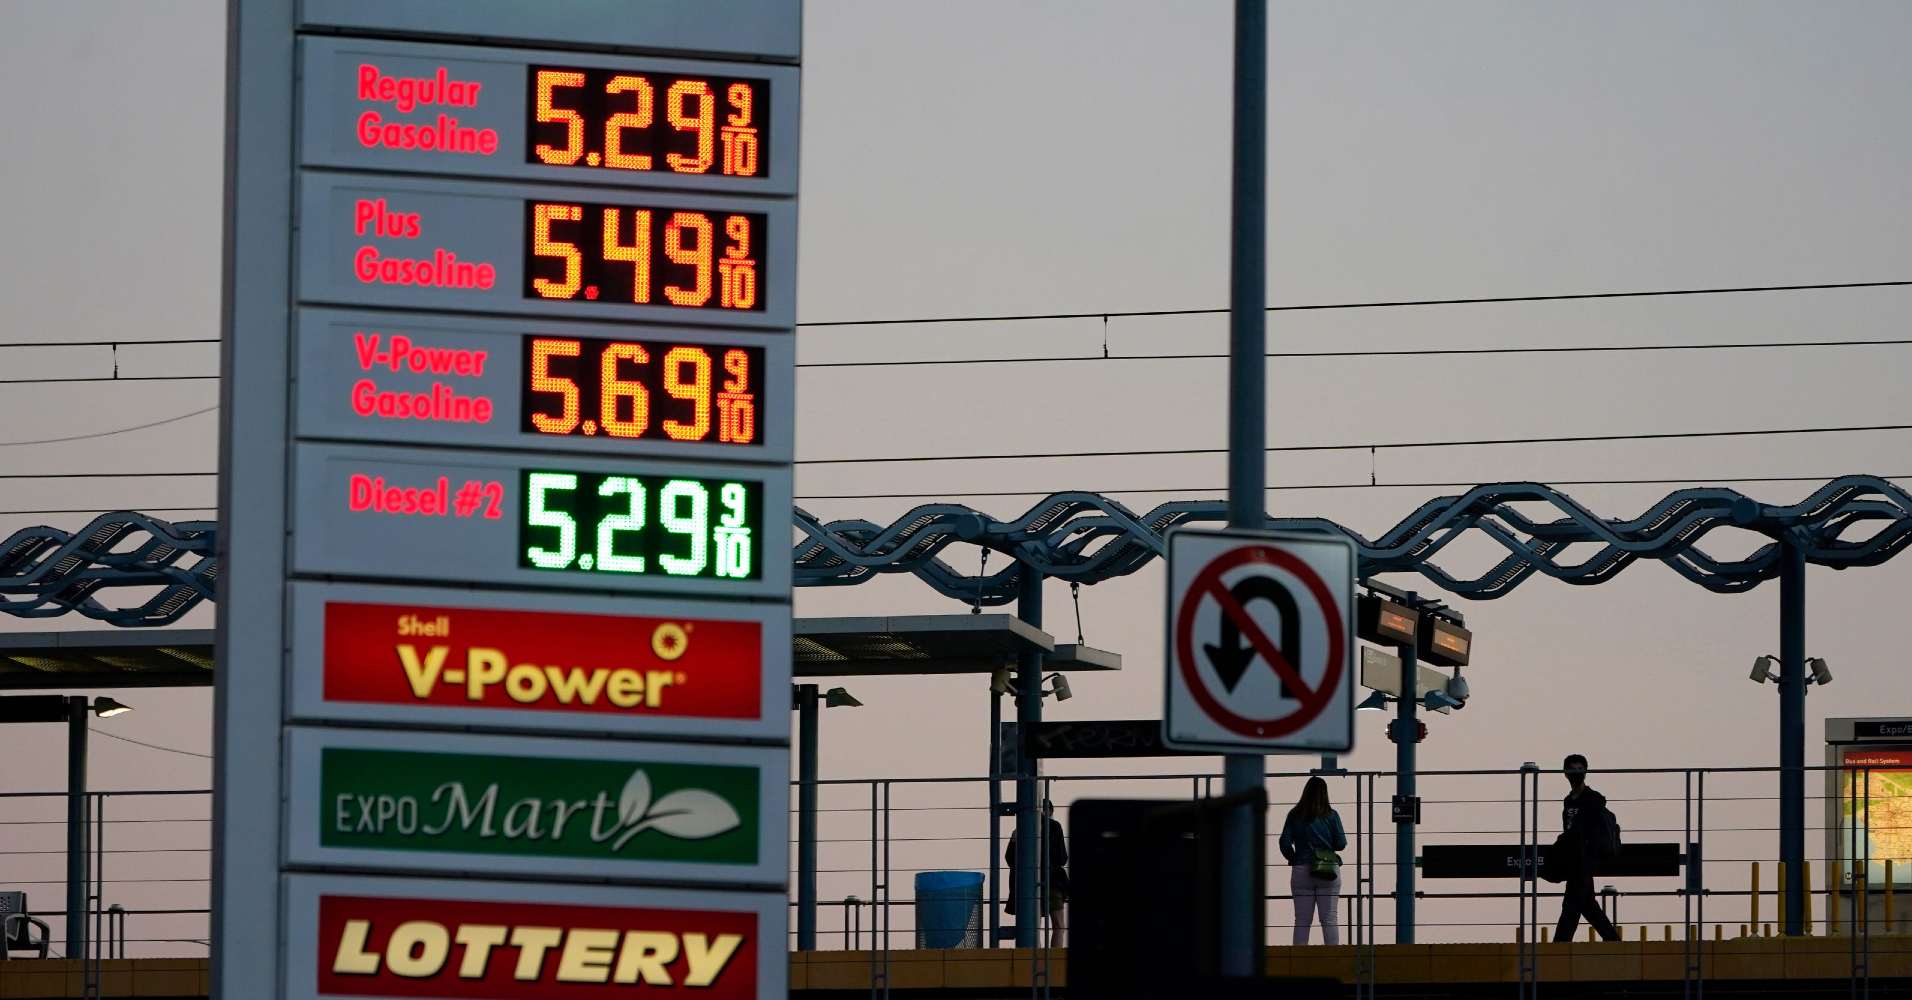 Gas price